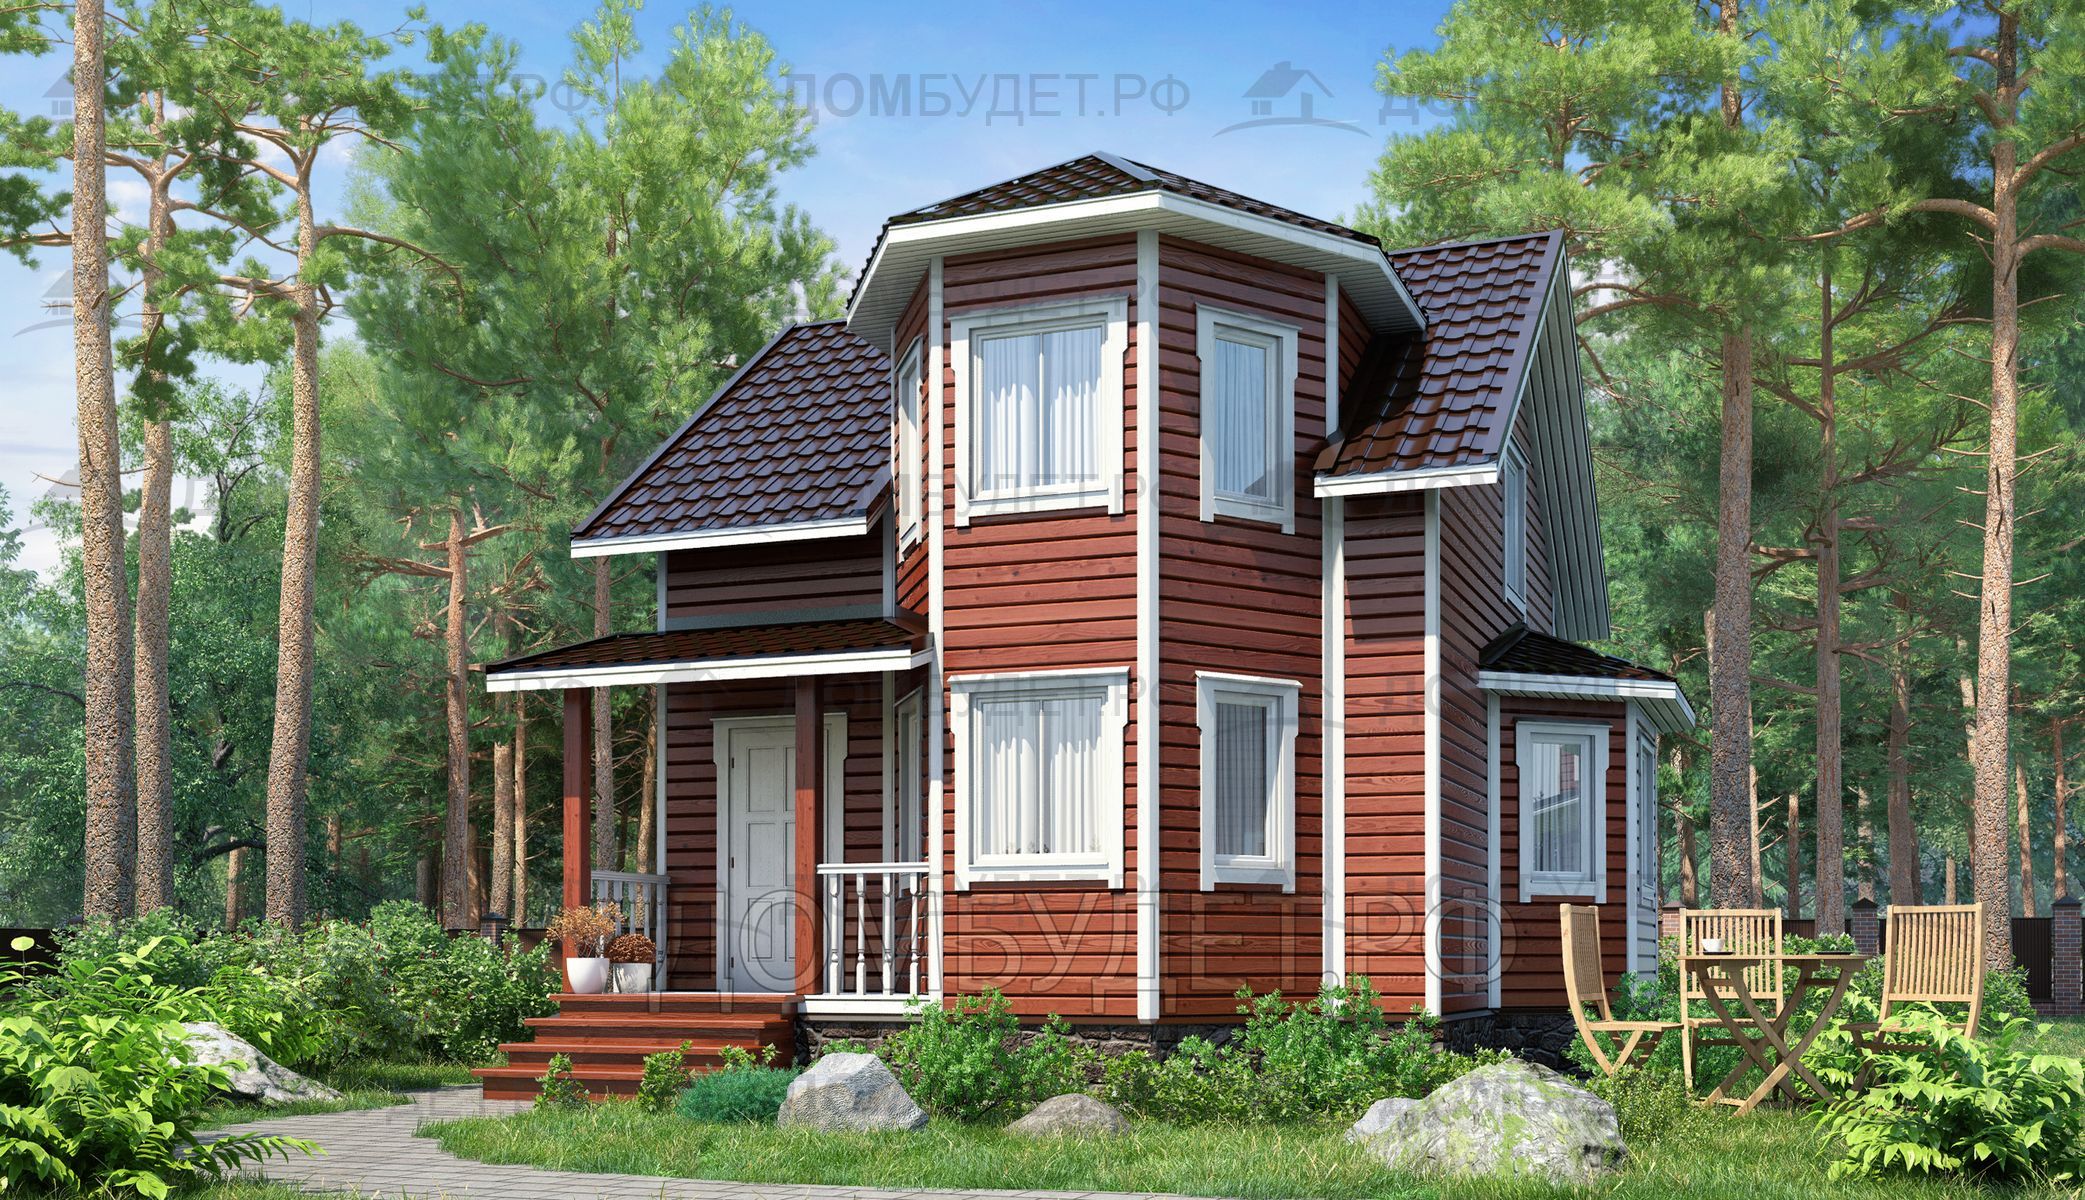 Строительство каркасных домов в СПб